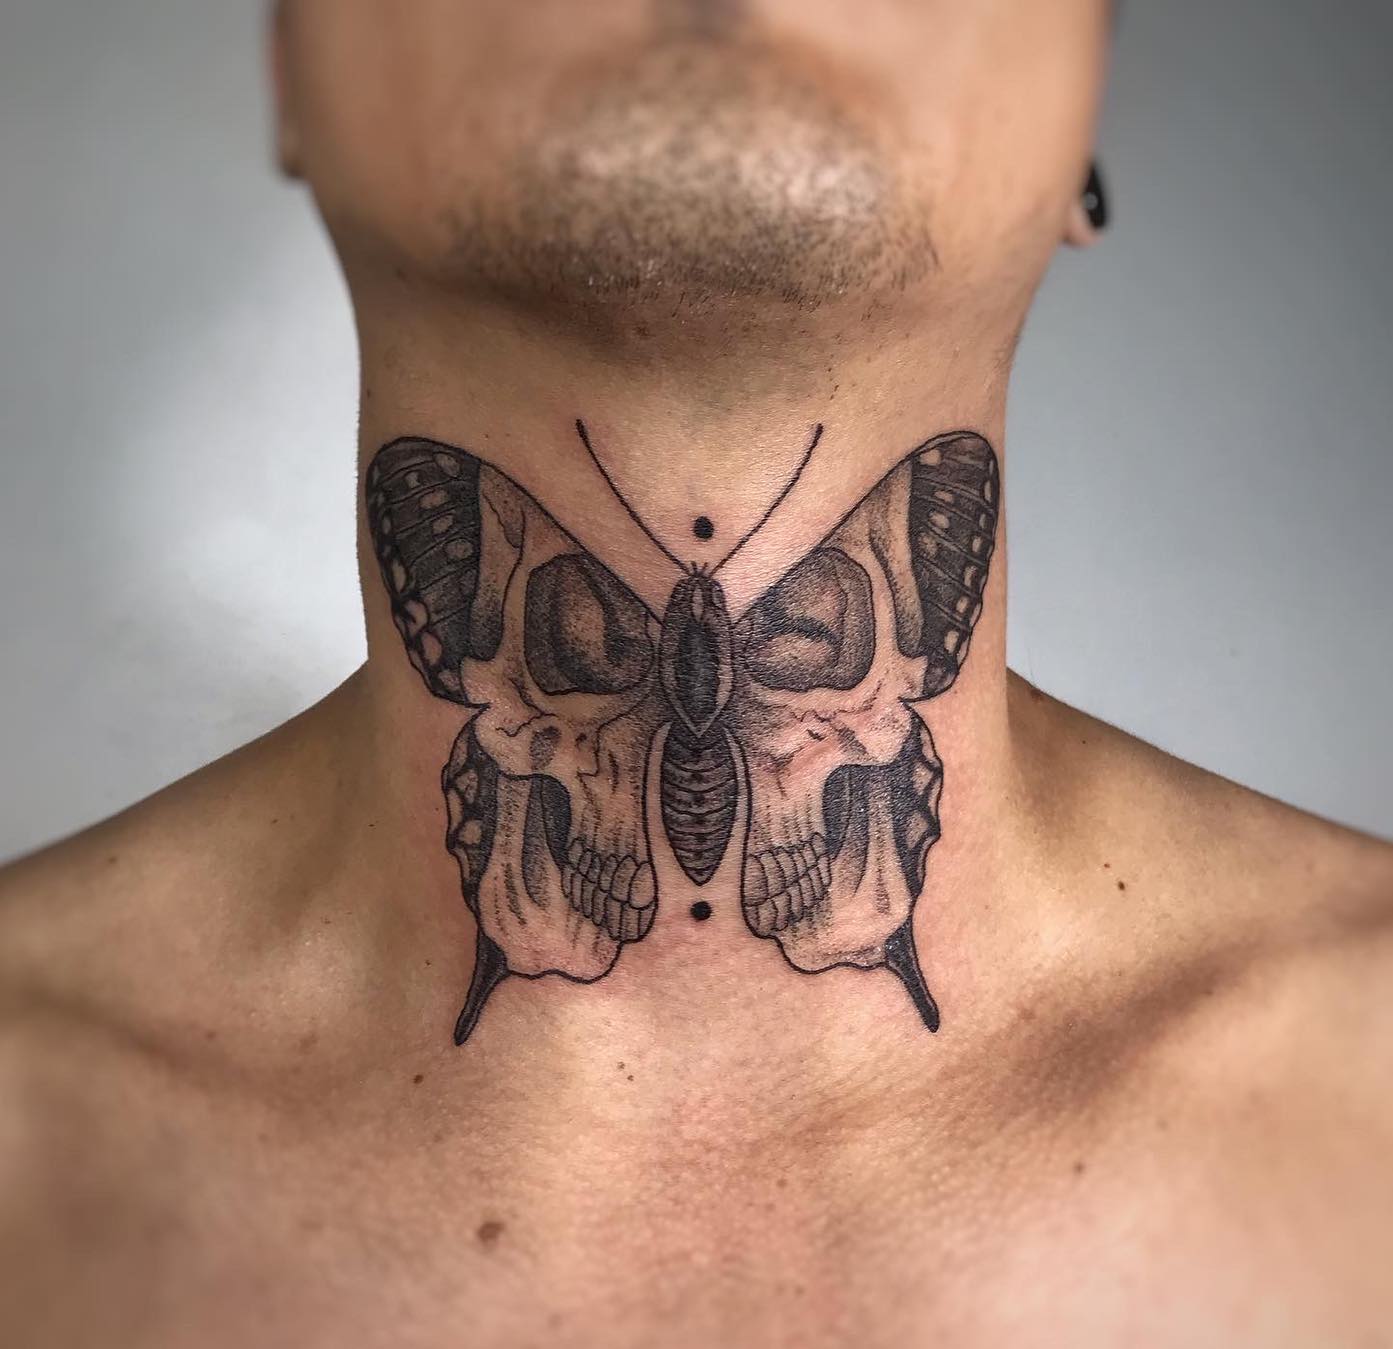 Butterfly skull neck tattoo